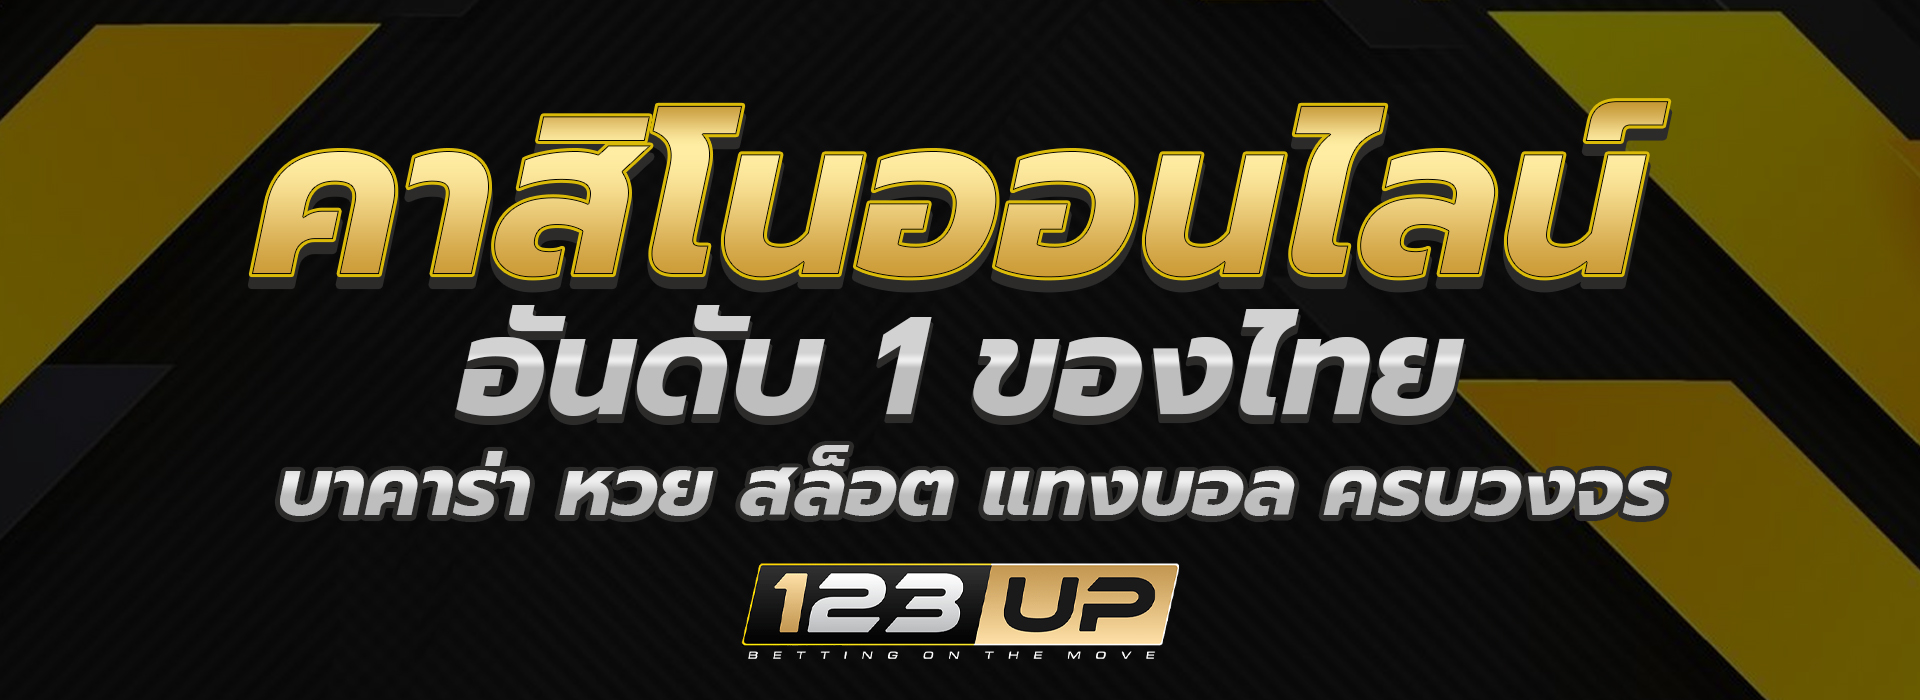 123up คาสิโนออนไลน์ อันดับ 1 ของไทย